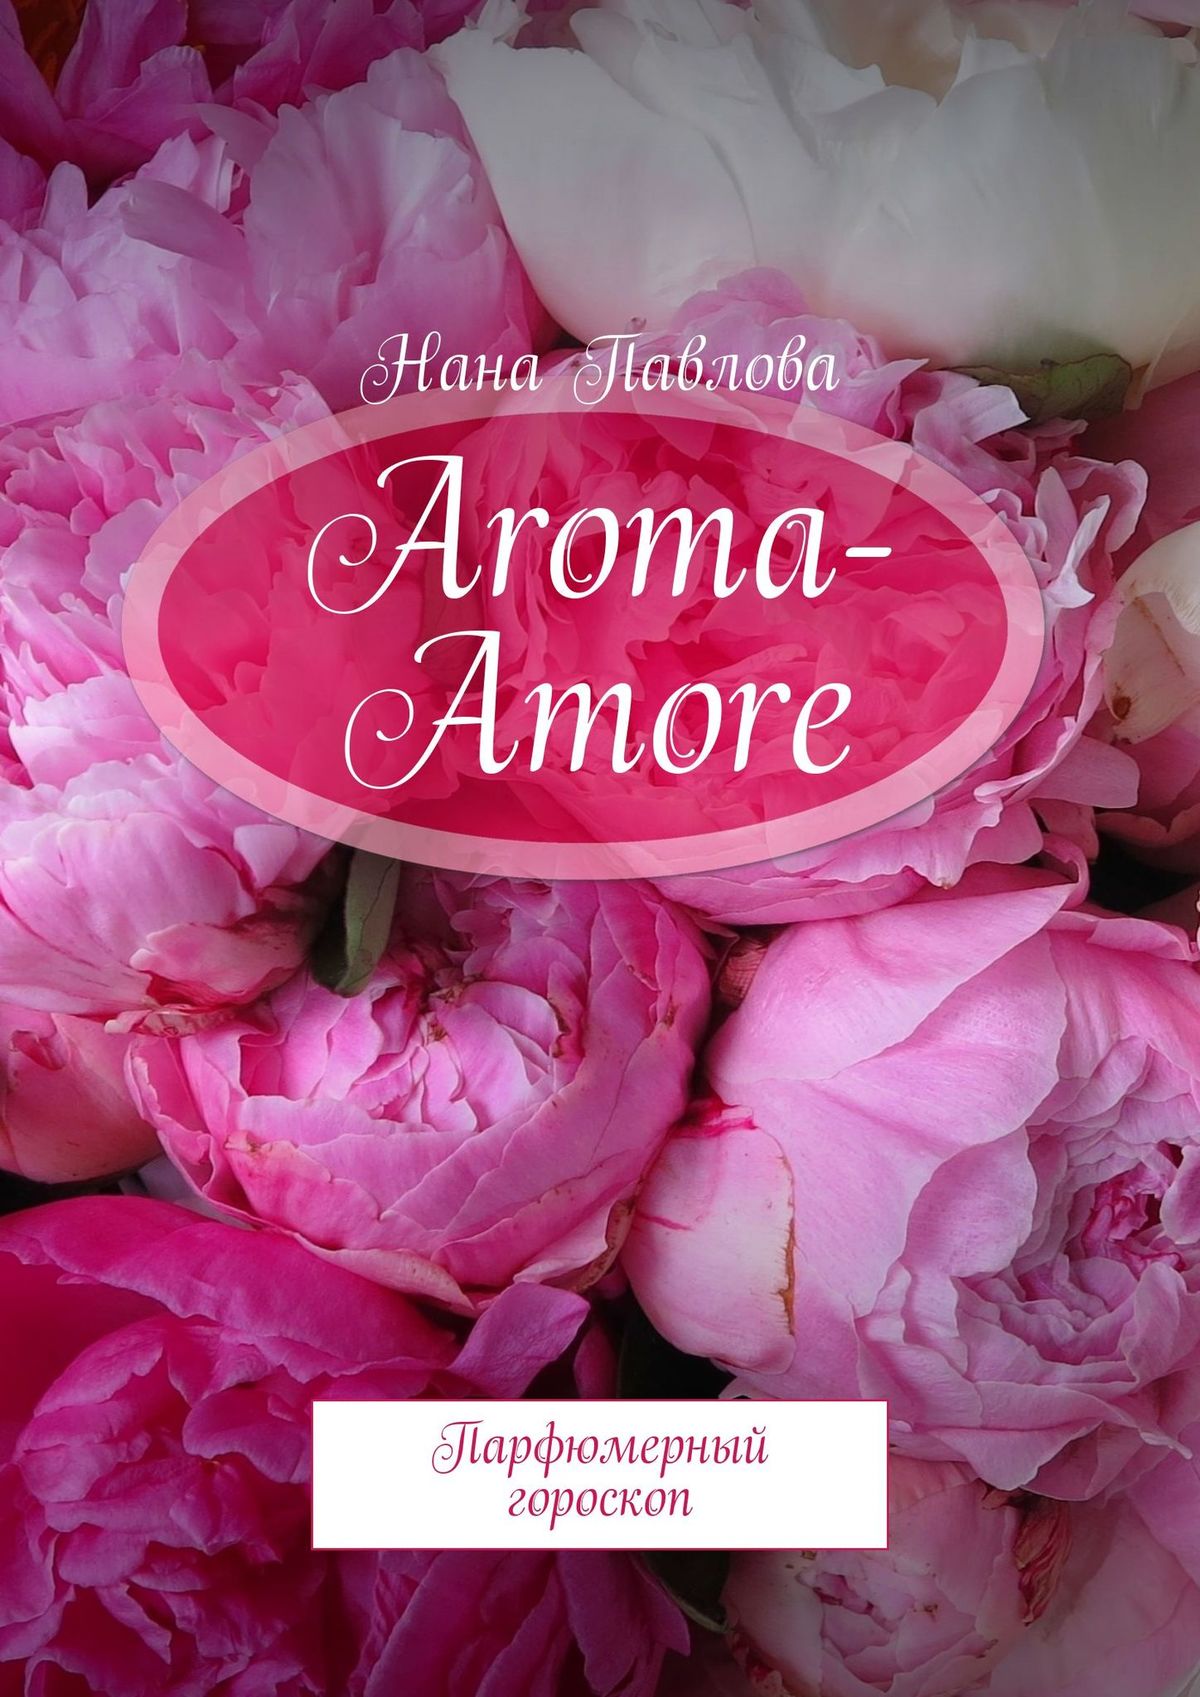 Книга Aroma-Amore из серии , созданная Нана Павлова, может относится к жанру Развлечения, Хобби, Ремесла, Руководства. Стоимость электронной книги Aroma-Amore с идентификатором 39824856 составляет 96.00 руб.